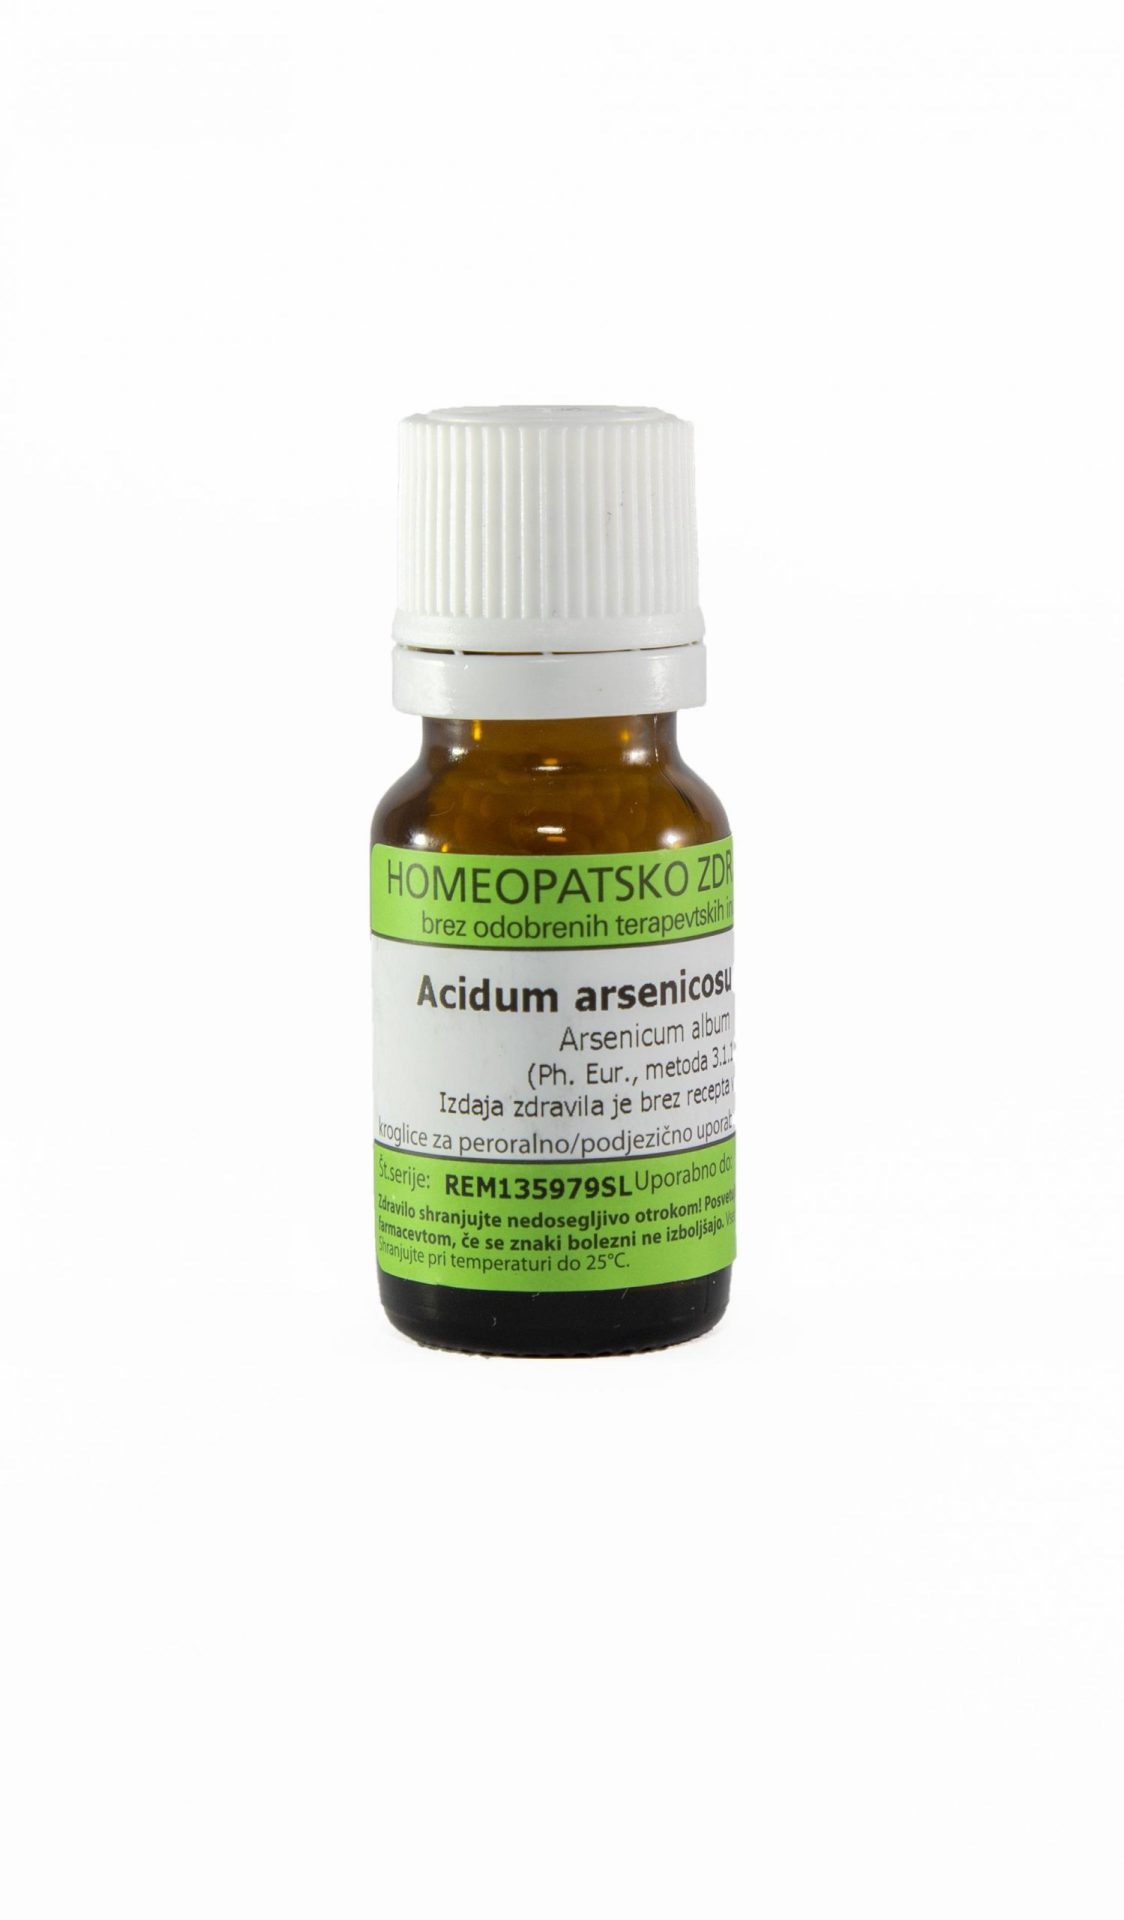 Acidum arsenicosum C6 homeopatske kroglice, 10 g